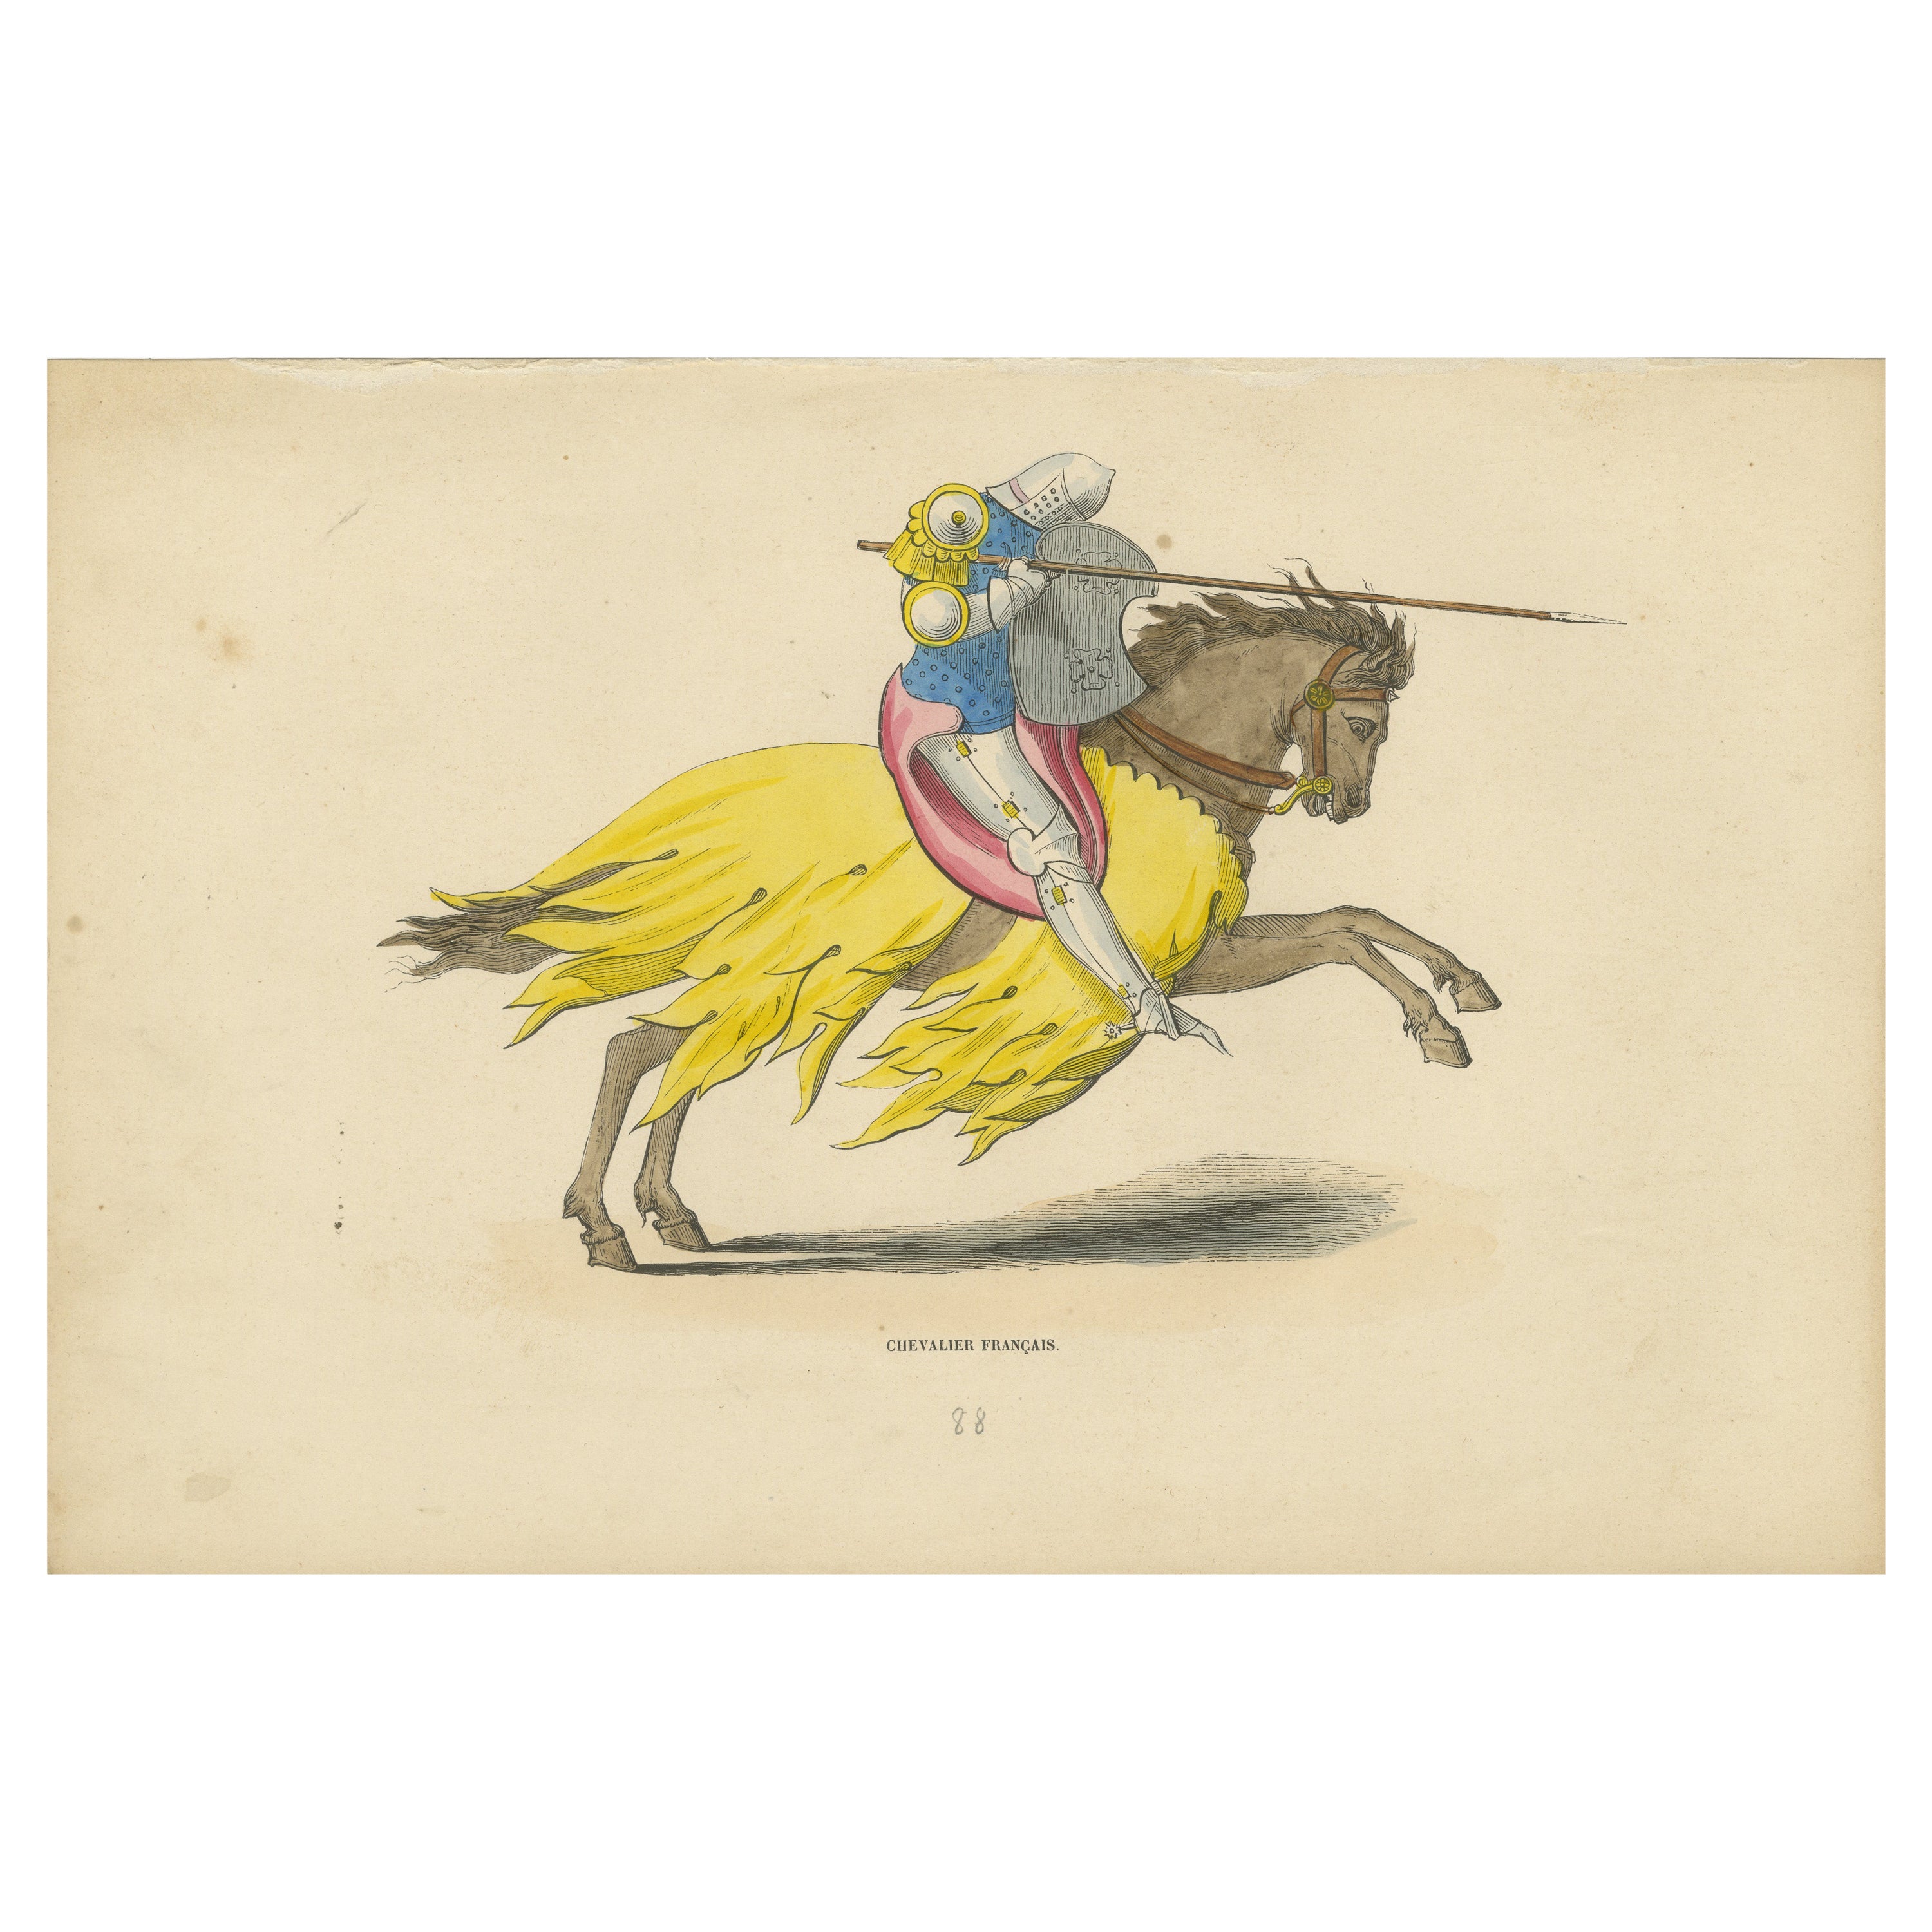 Charge de valeur : Le chevalier français médiéval, 1847